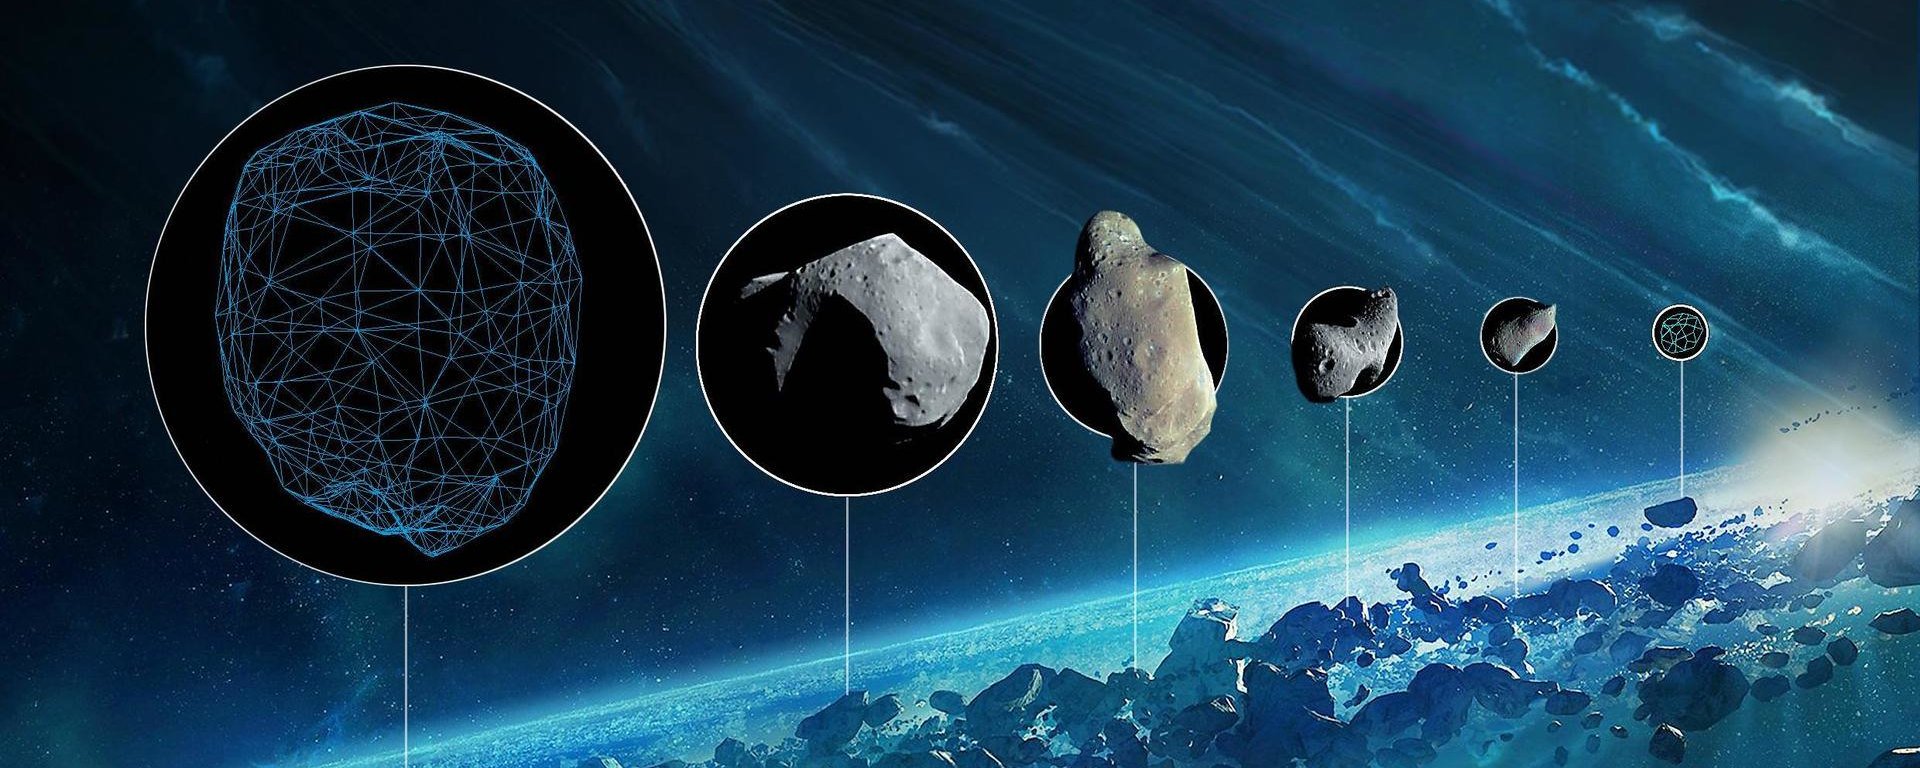 Hvis du ikke vidste: hvad er forskellen mellem en komet og en asteroide?